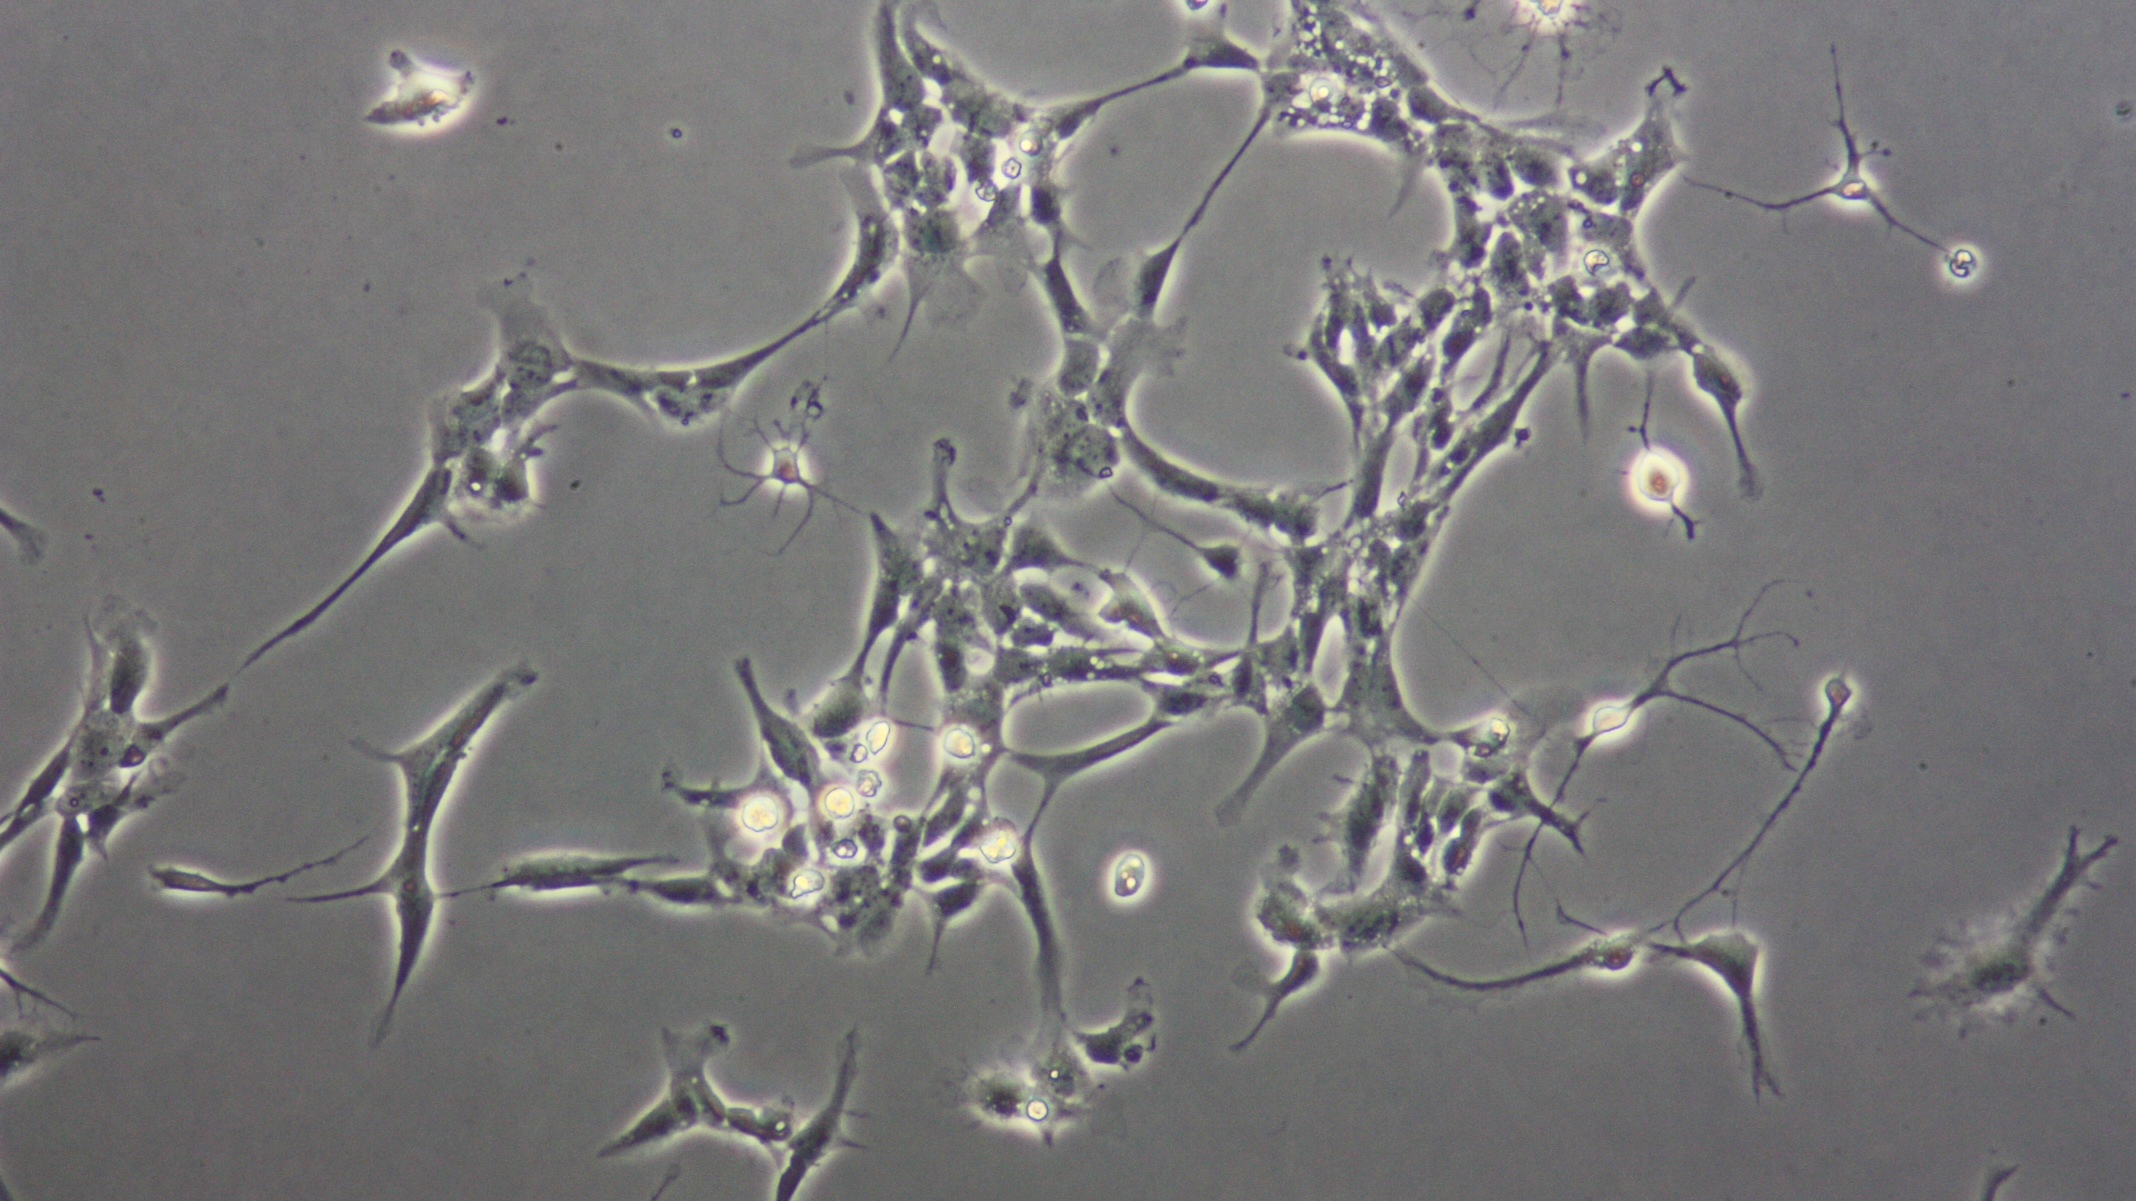 Glioblastoma cells under a microscope